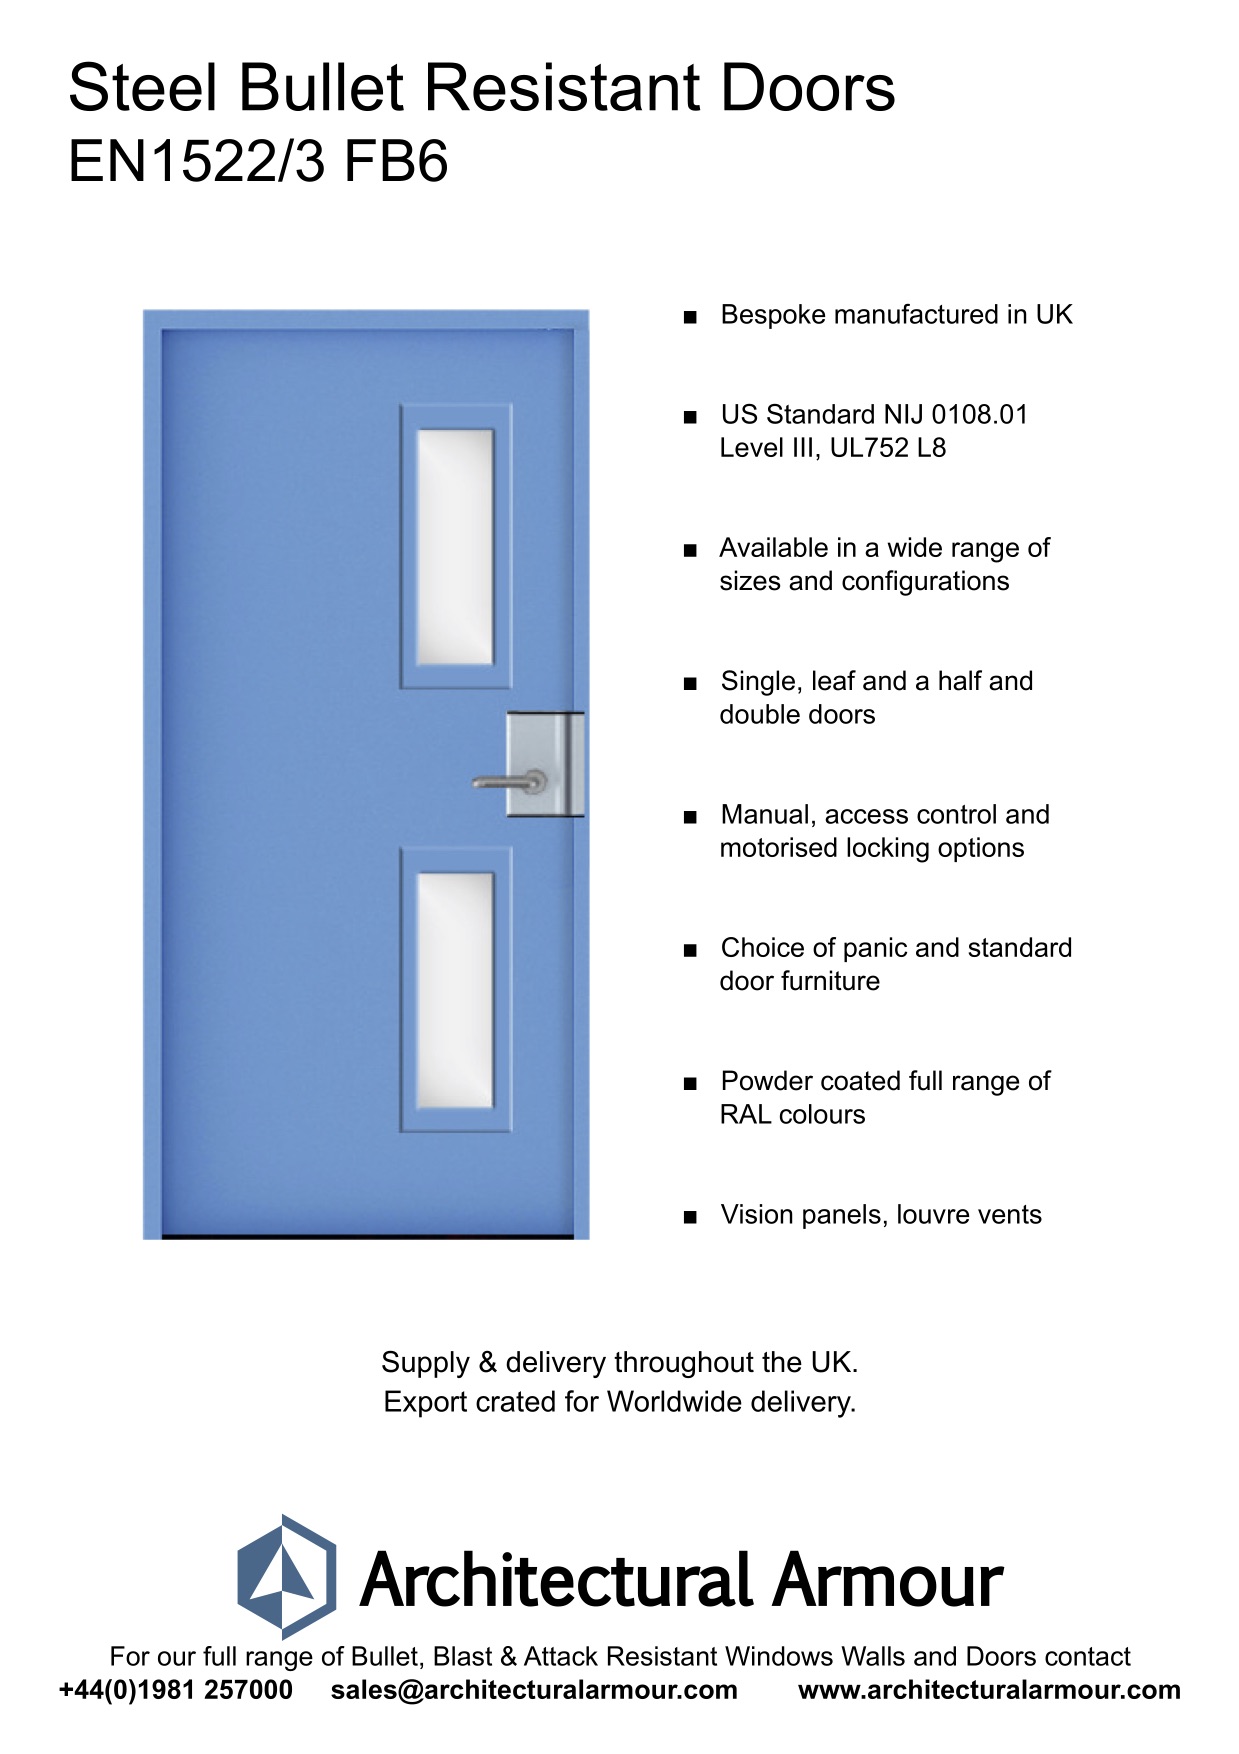  EN1522-3-FB6-Bullet-Resistant-Metal-Security-Door-UK